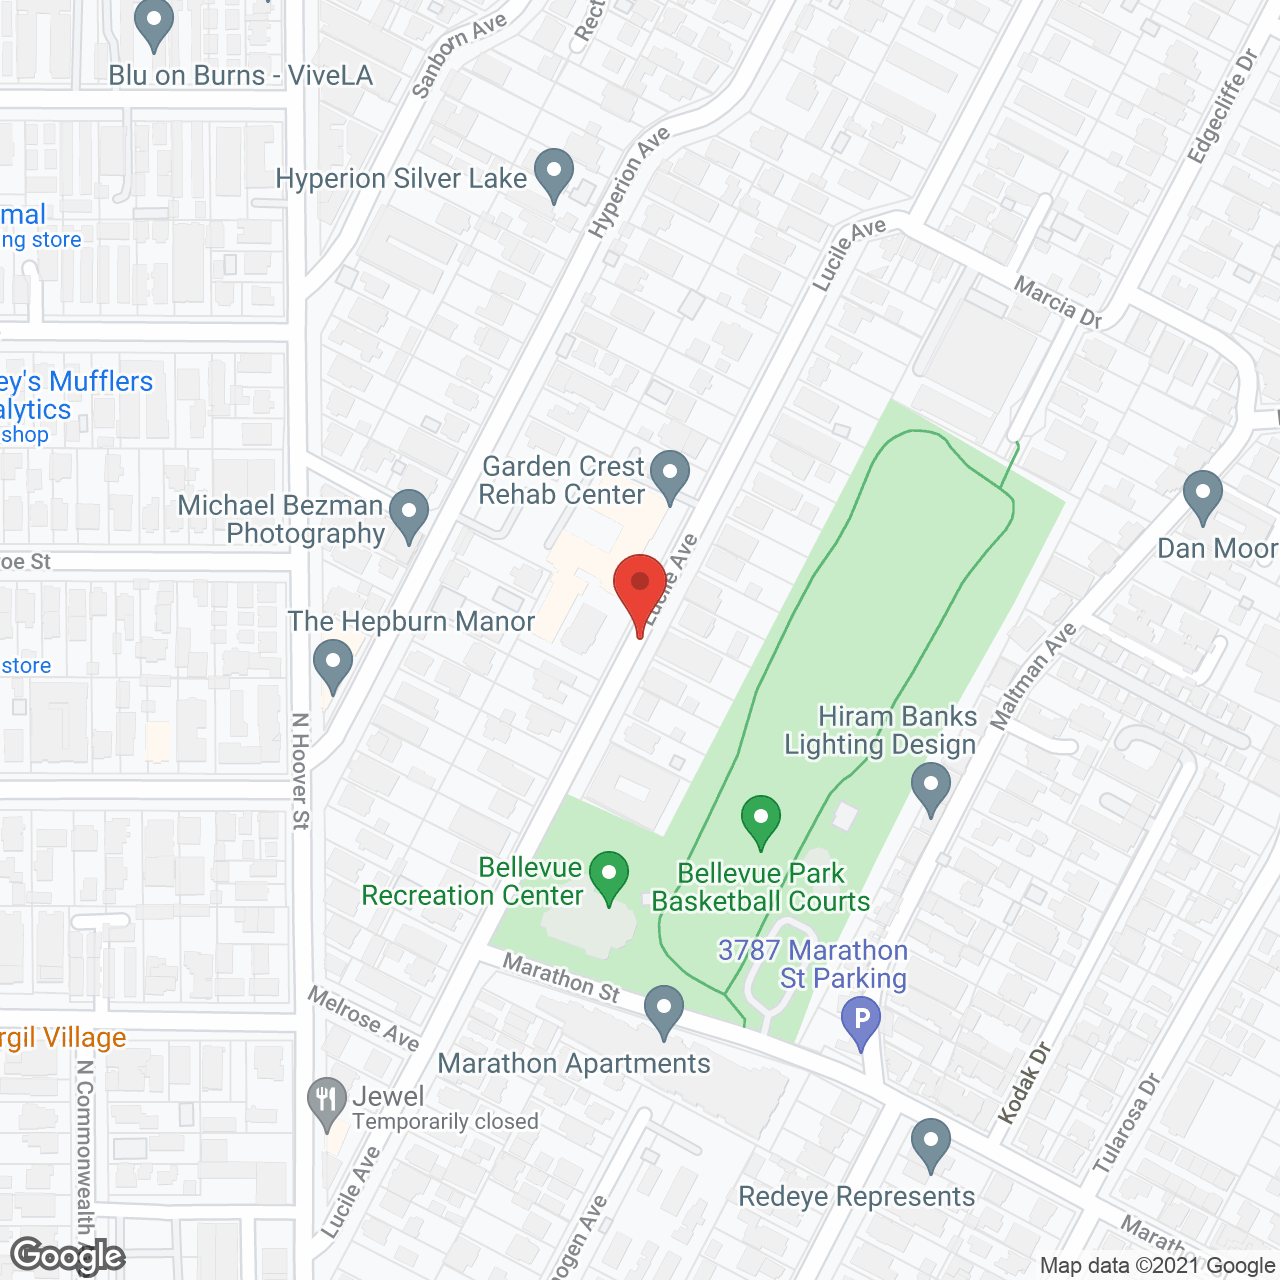 Garden Crest in google map